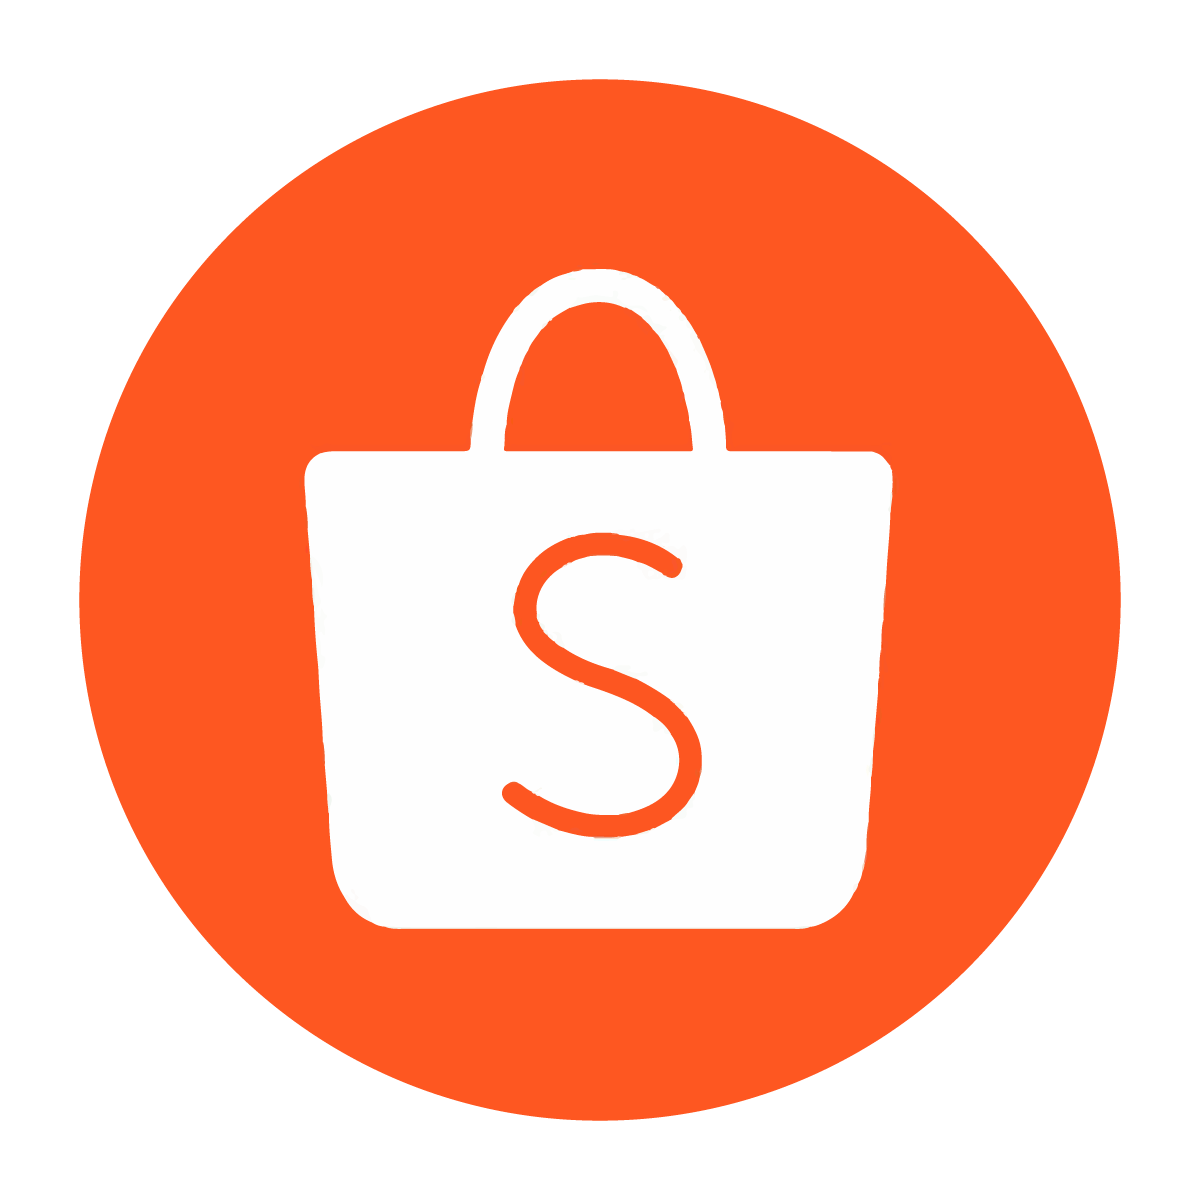 Điểm bán trực tuyến - Shopee